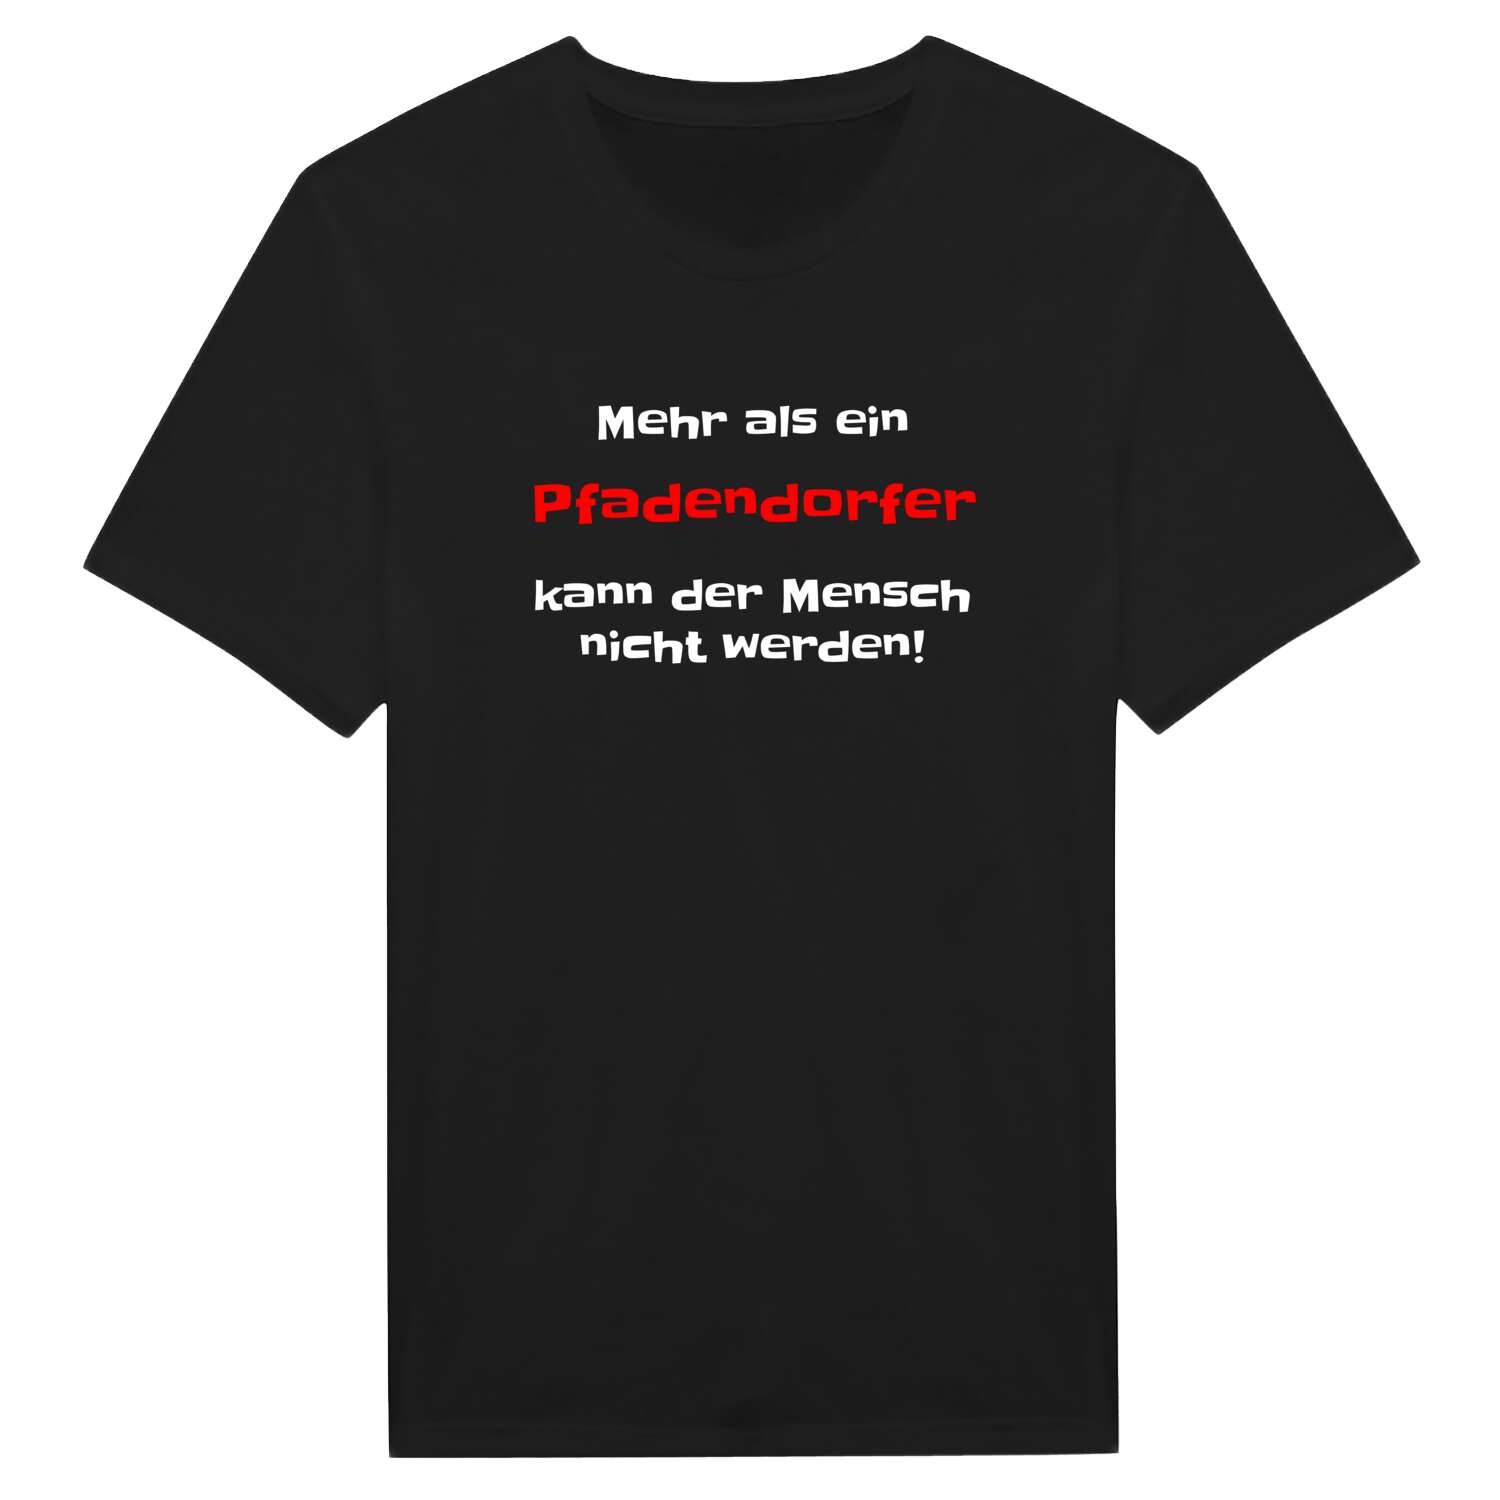 Pfadendorf T-Shirt »Mehr als ein«